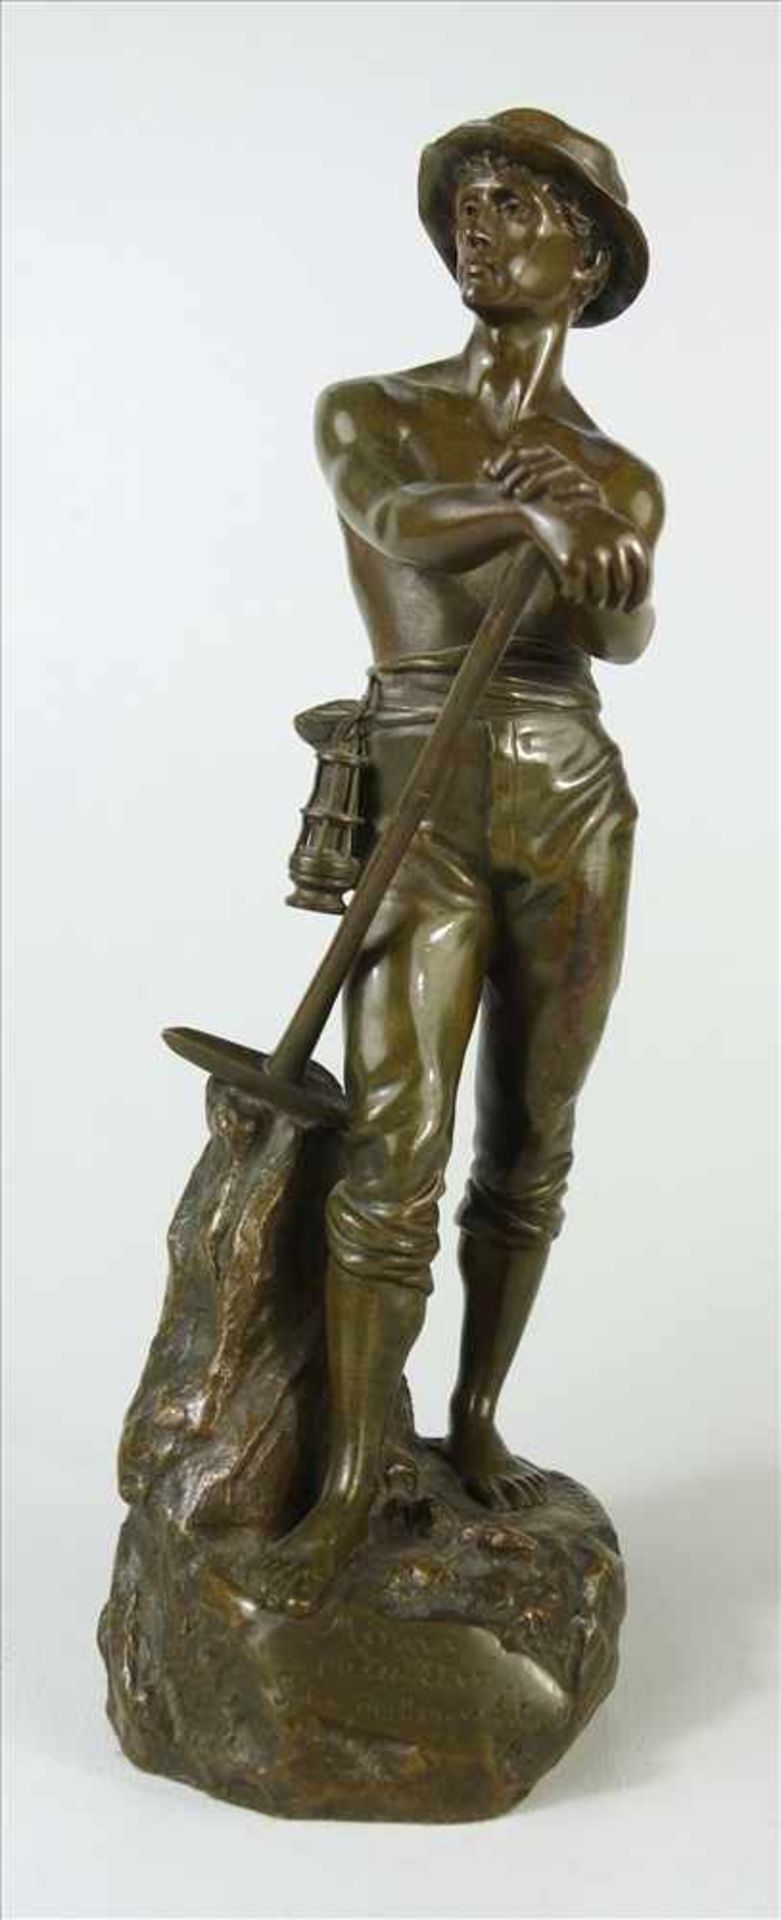 Charles Octave Levy (1820-1899 Paris) Le Mineur, um 1900, Bronze, stehender Bergbarbeiter mit